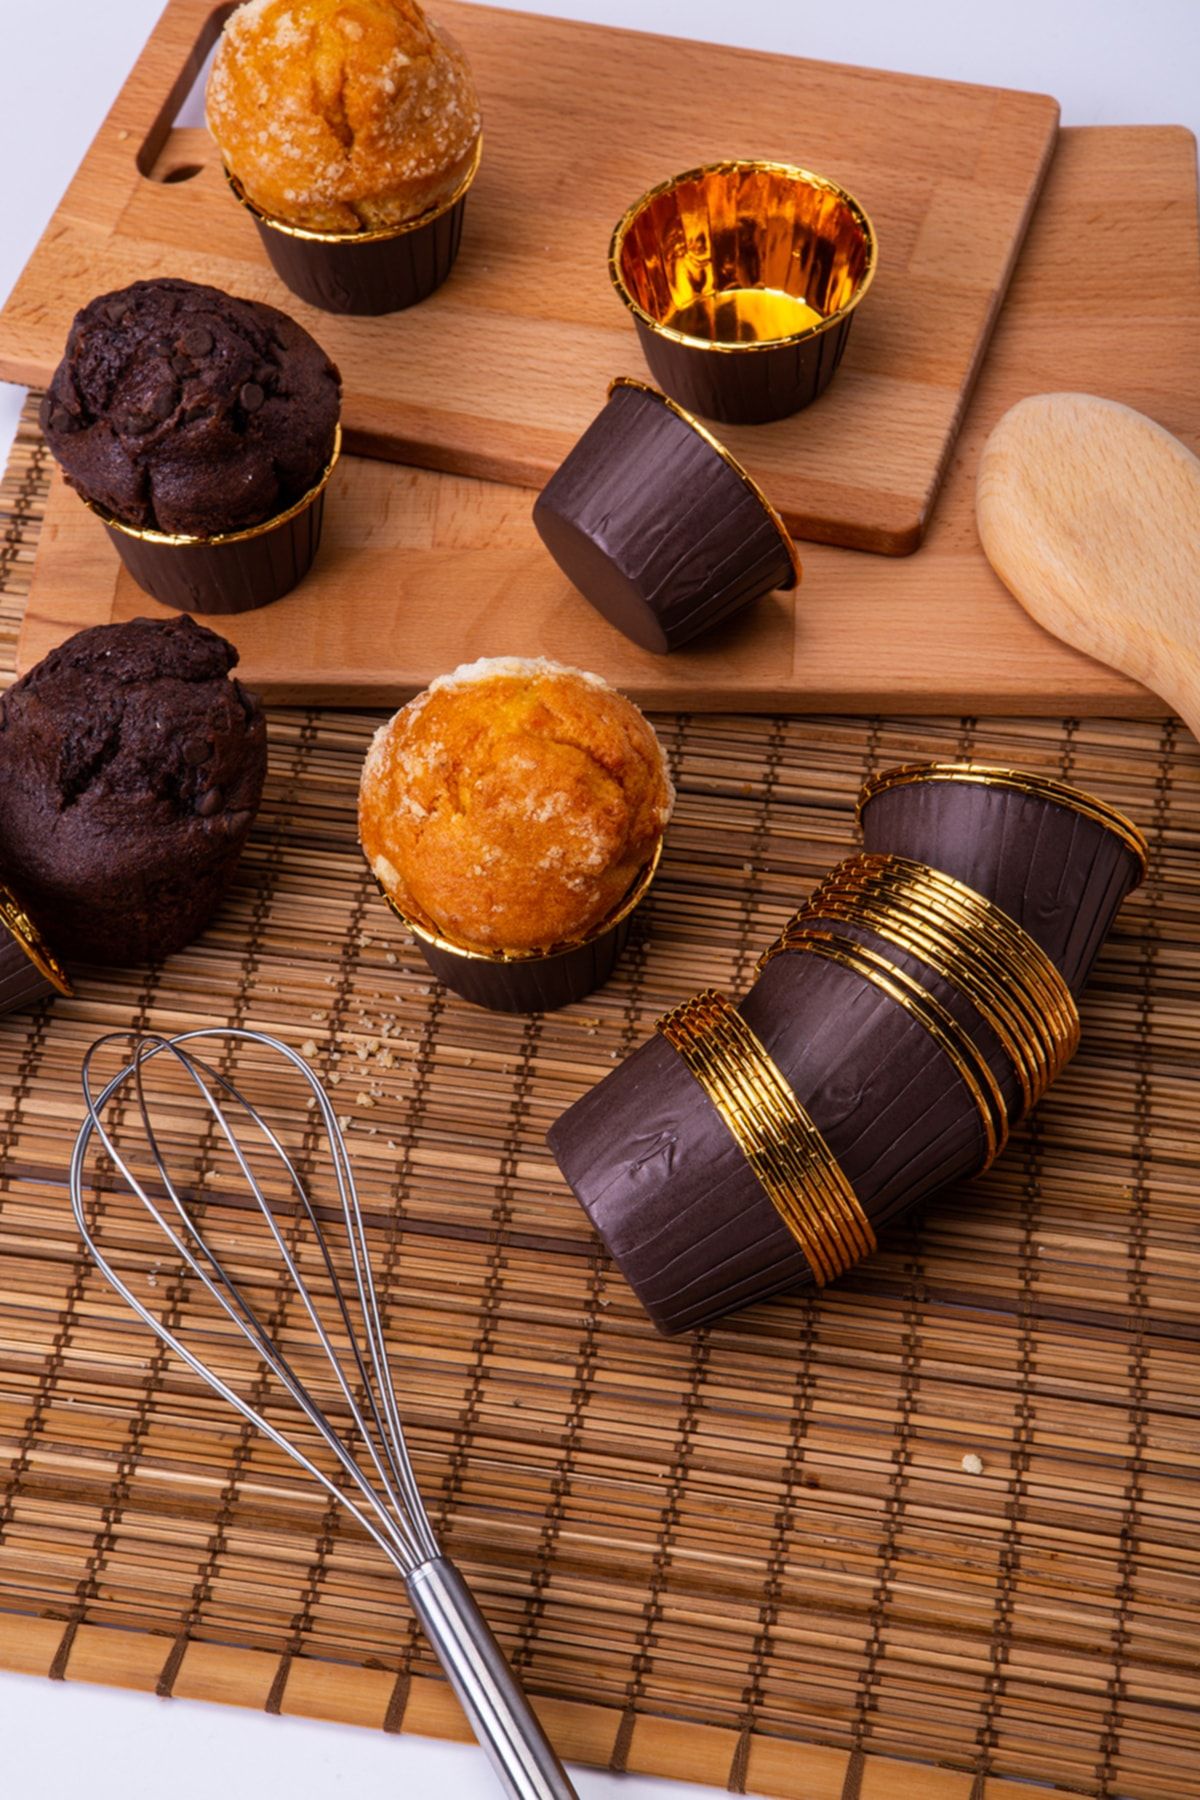 Huzur Party Store Kahverengi Parlak Karton 25'li Kek Kalıbı Kenarı Gold Kaplama Fırında Dağılmayan 6.5x4 cm Muffin